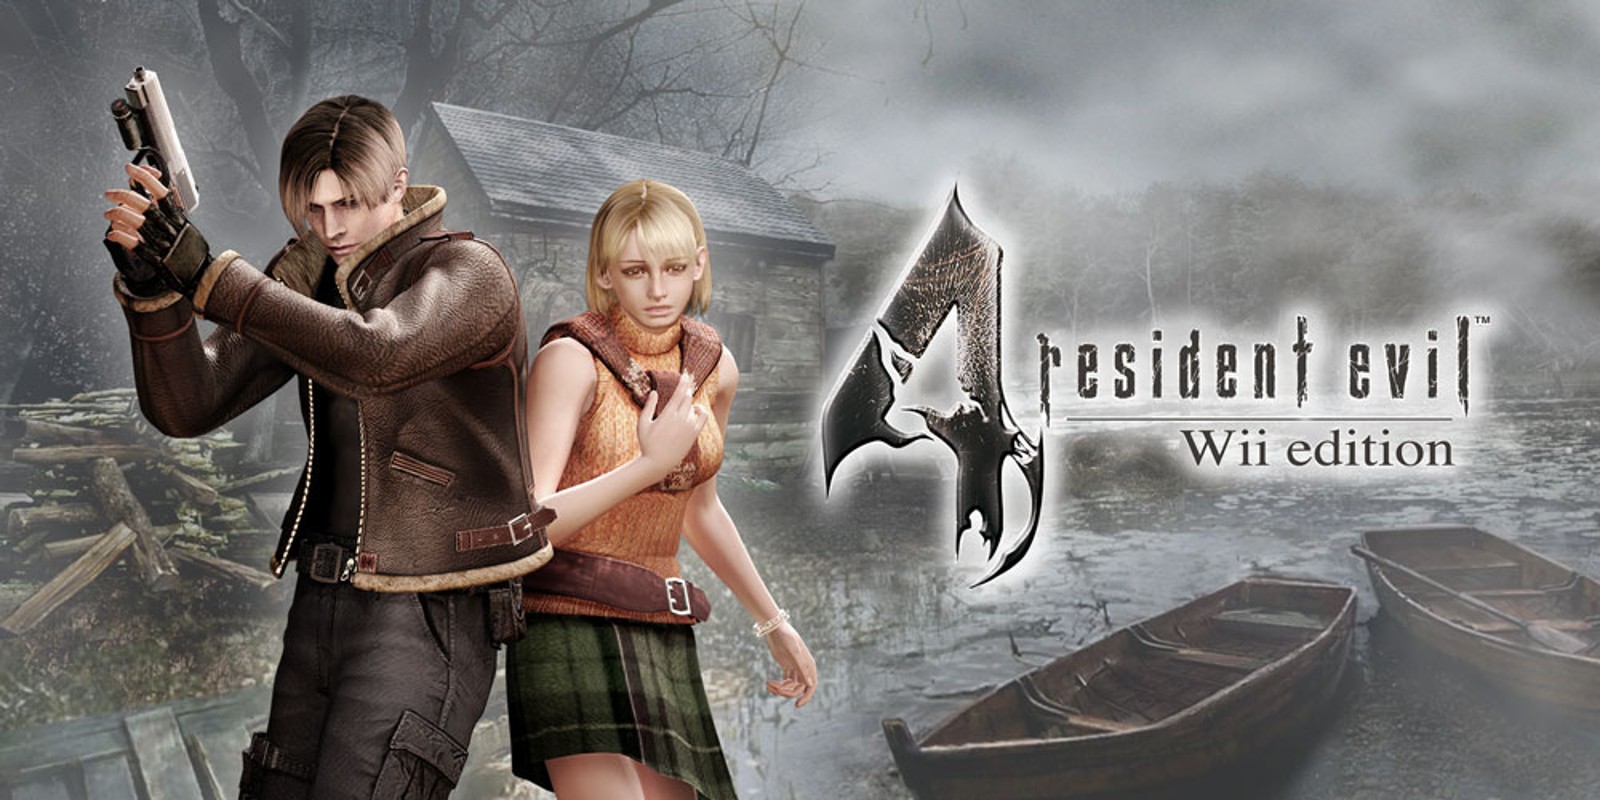 Прохождение игры Resident Evil 4 - Ultimate HD Edition # 21 (Русская версия игры) PC - Ver. HD Full.